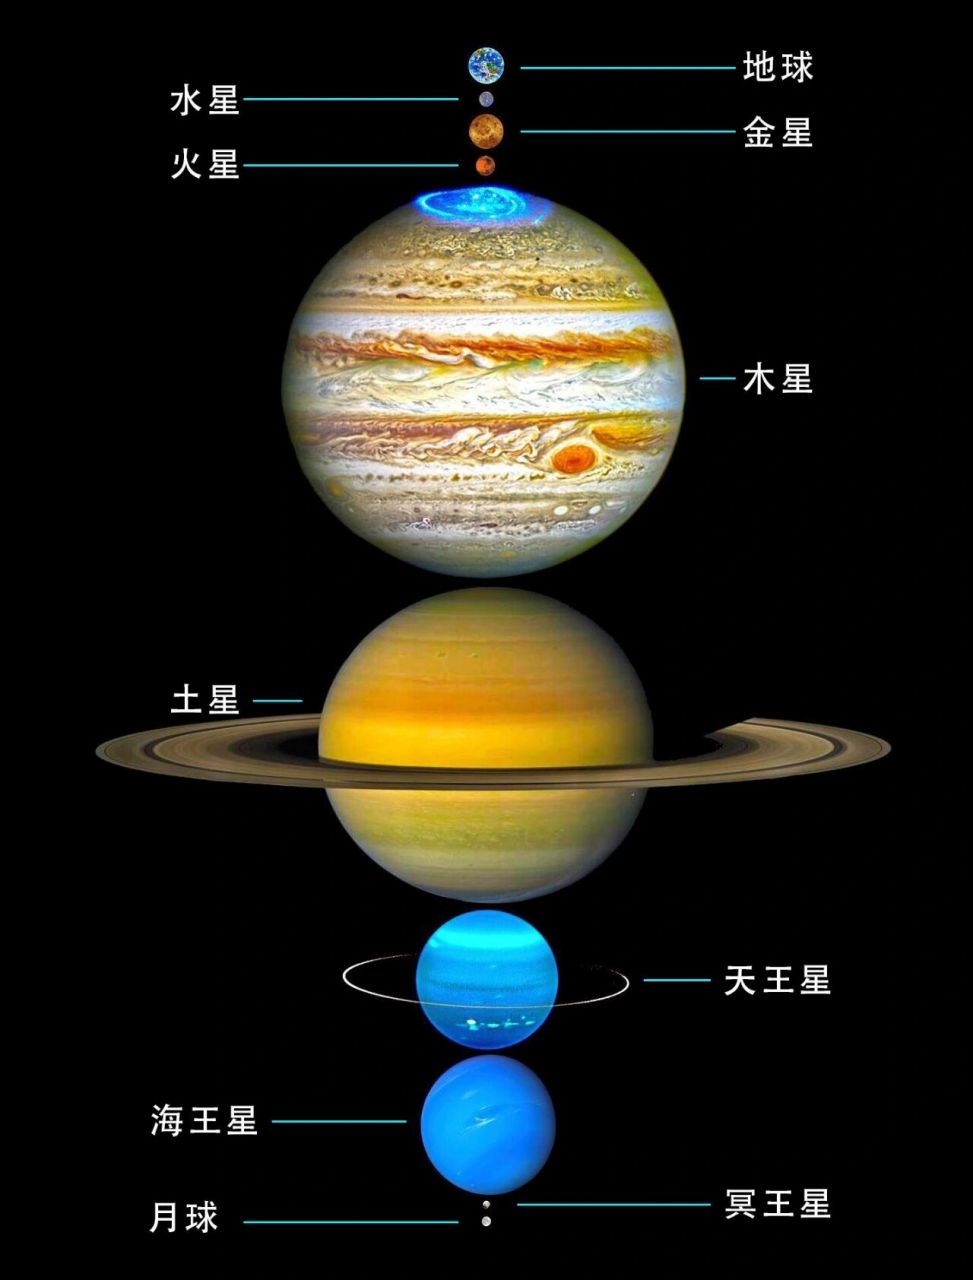 真的是一点也不冤枉它 这个图片是太阳系行星等比例排列,地球和月球的